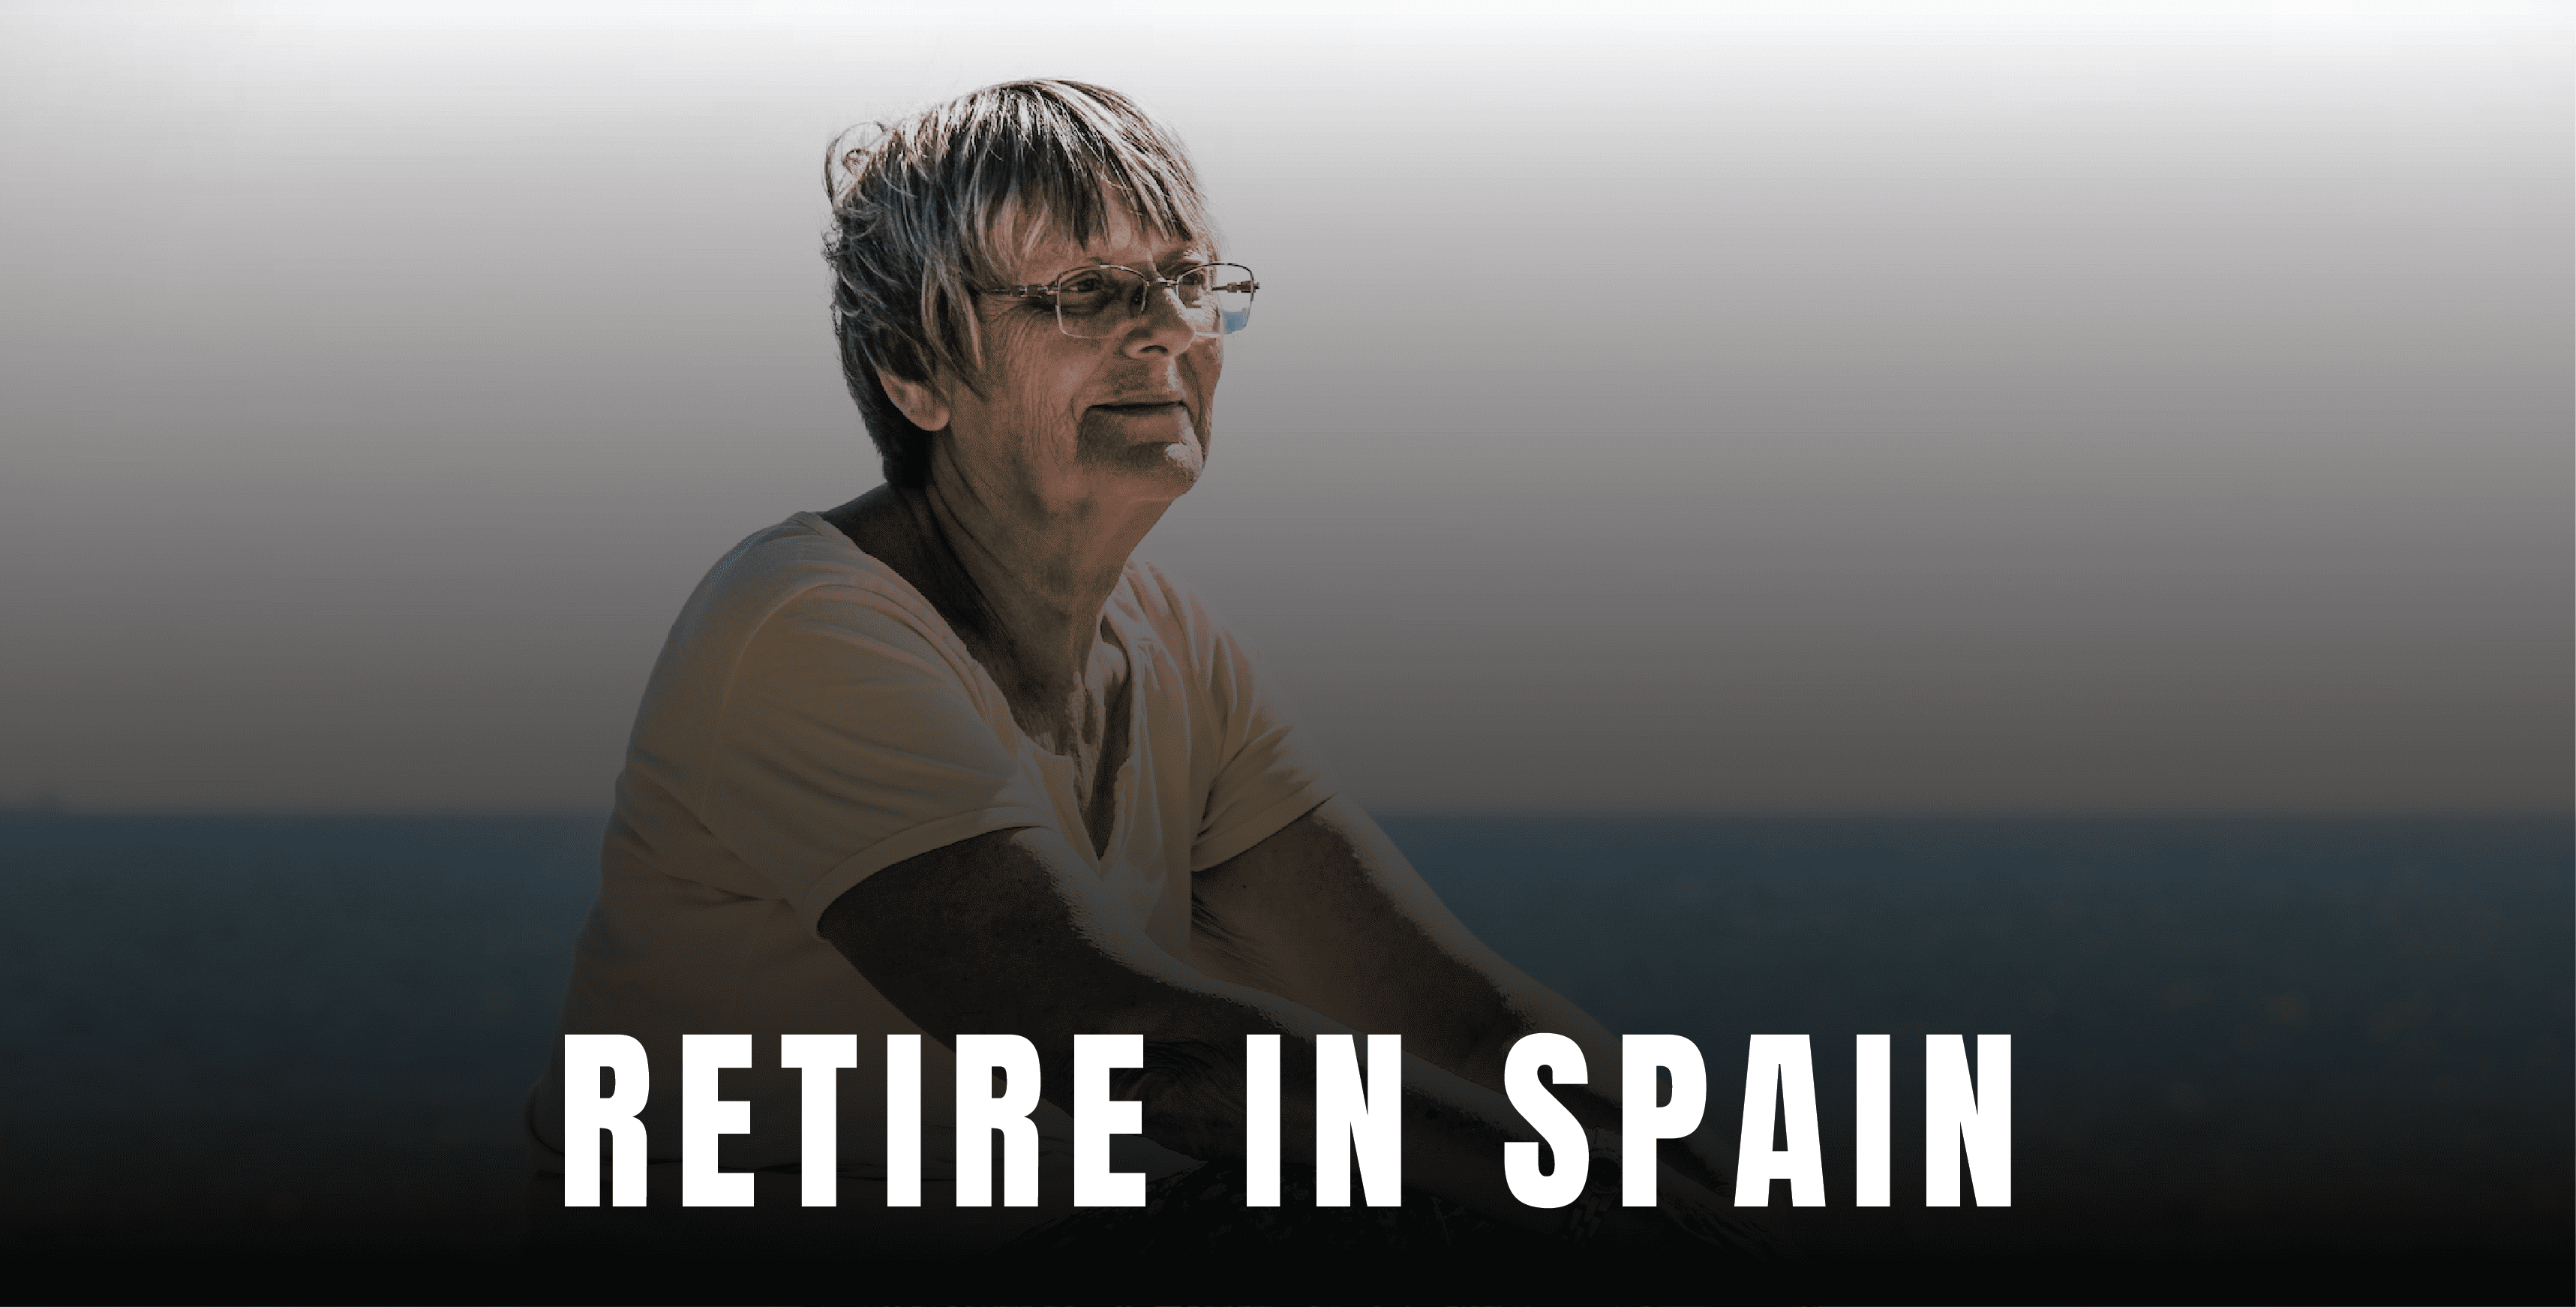 Retire in Spain